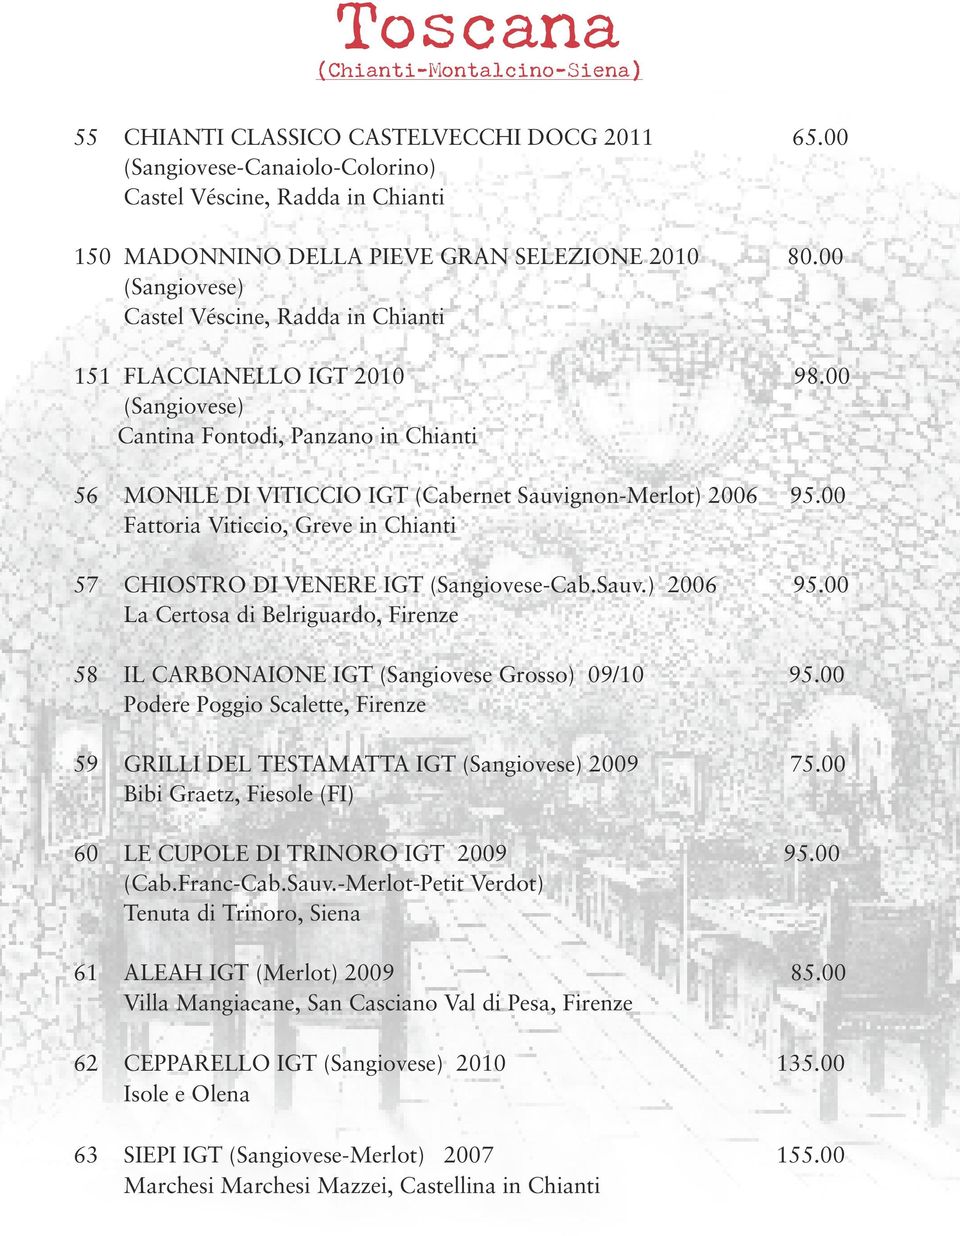 00 Fattoria Viticcio, Greve in Chianti 57 CHIOSTRO DI VENERE IGT (Sangiovese-Cab.Sauv.) 2006 95.00 La Certosa di Belriguardo, Firenze 58 IL CARBONAIONE IGT (Sangiovese Grosso) 09/10 95.